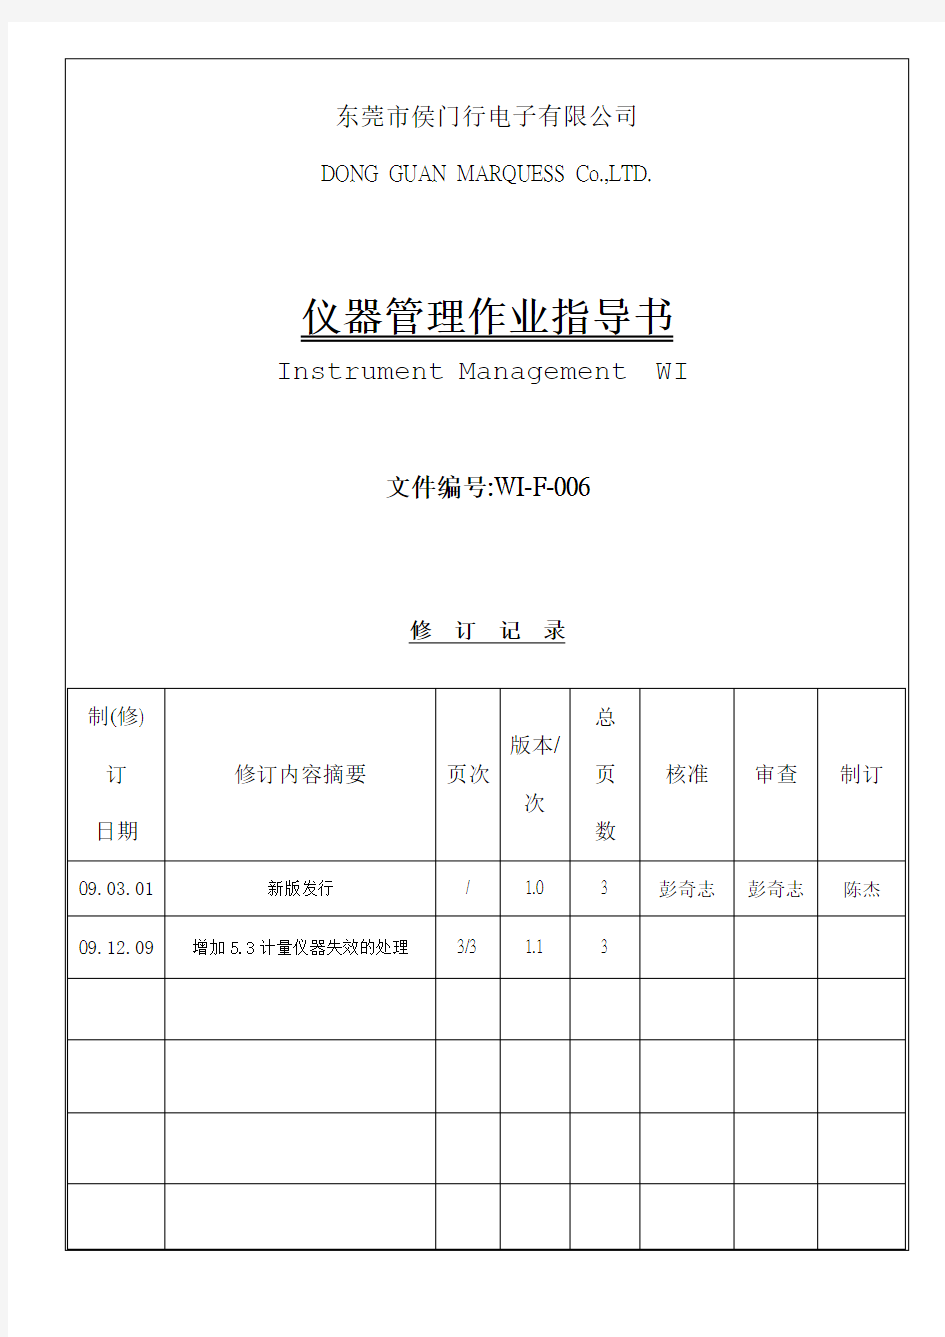 仪器管理作业指导书(WI-F-006)